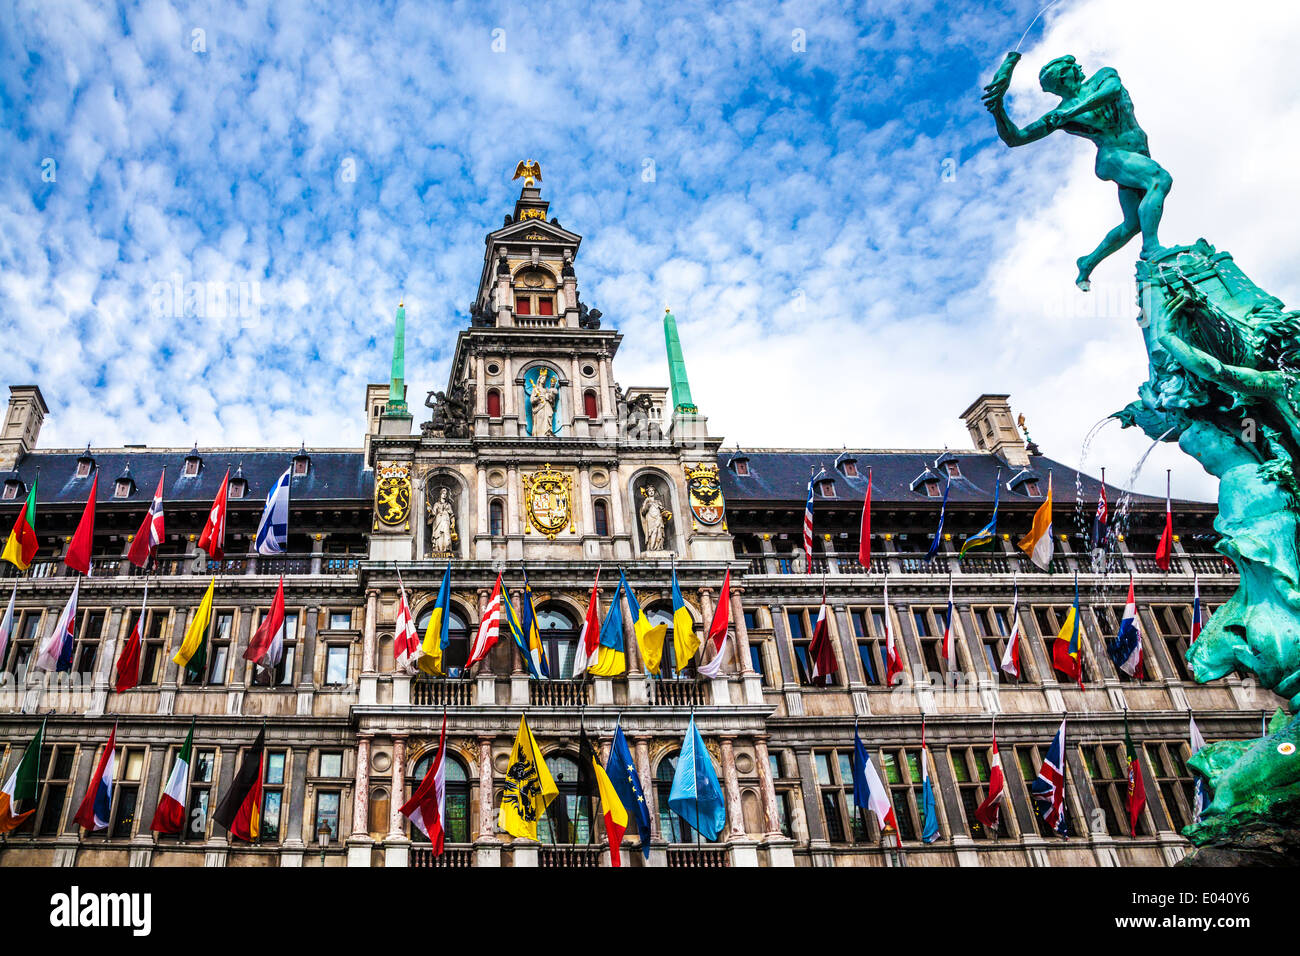 Brabo-Brunnen und dem Rathaus (Stadhuis) in der Grote Markt (Hauptplatz) in Antwerpen, Belgien. Stockfoto